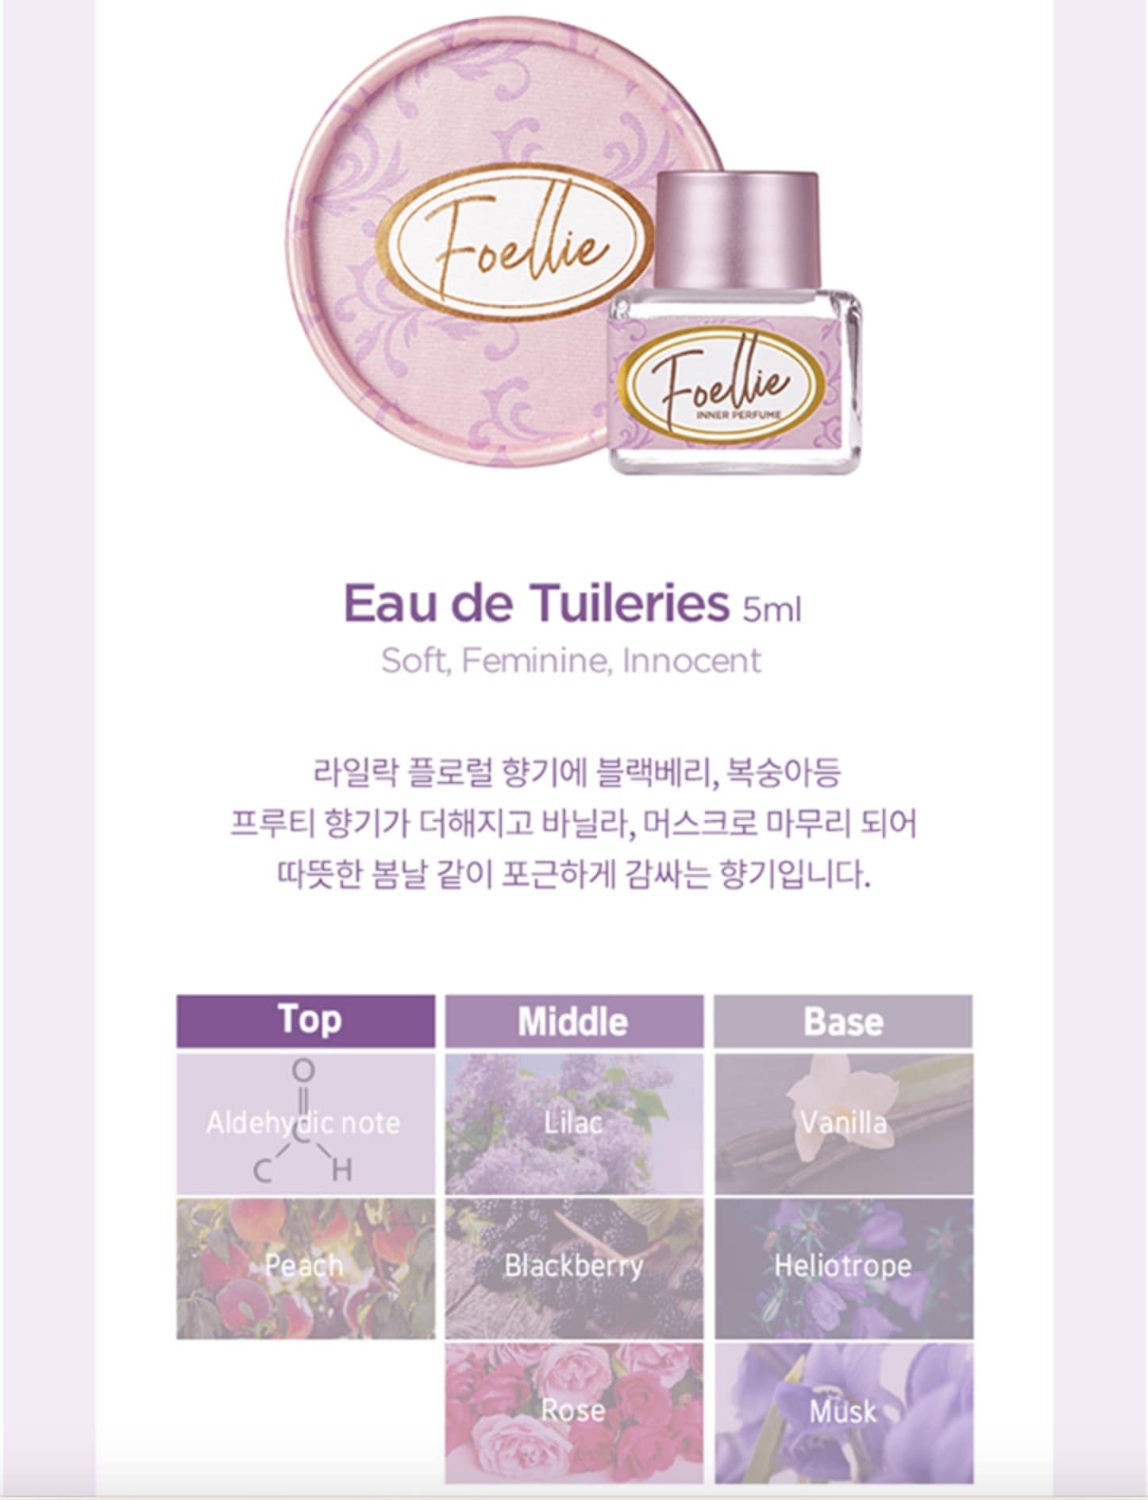 Nước Hoa Vùng Kín Foellie Tuileries hương phấn nhẹ nhàng 5ml